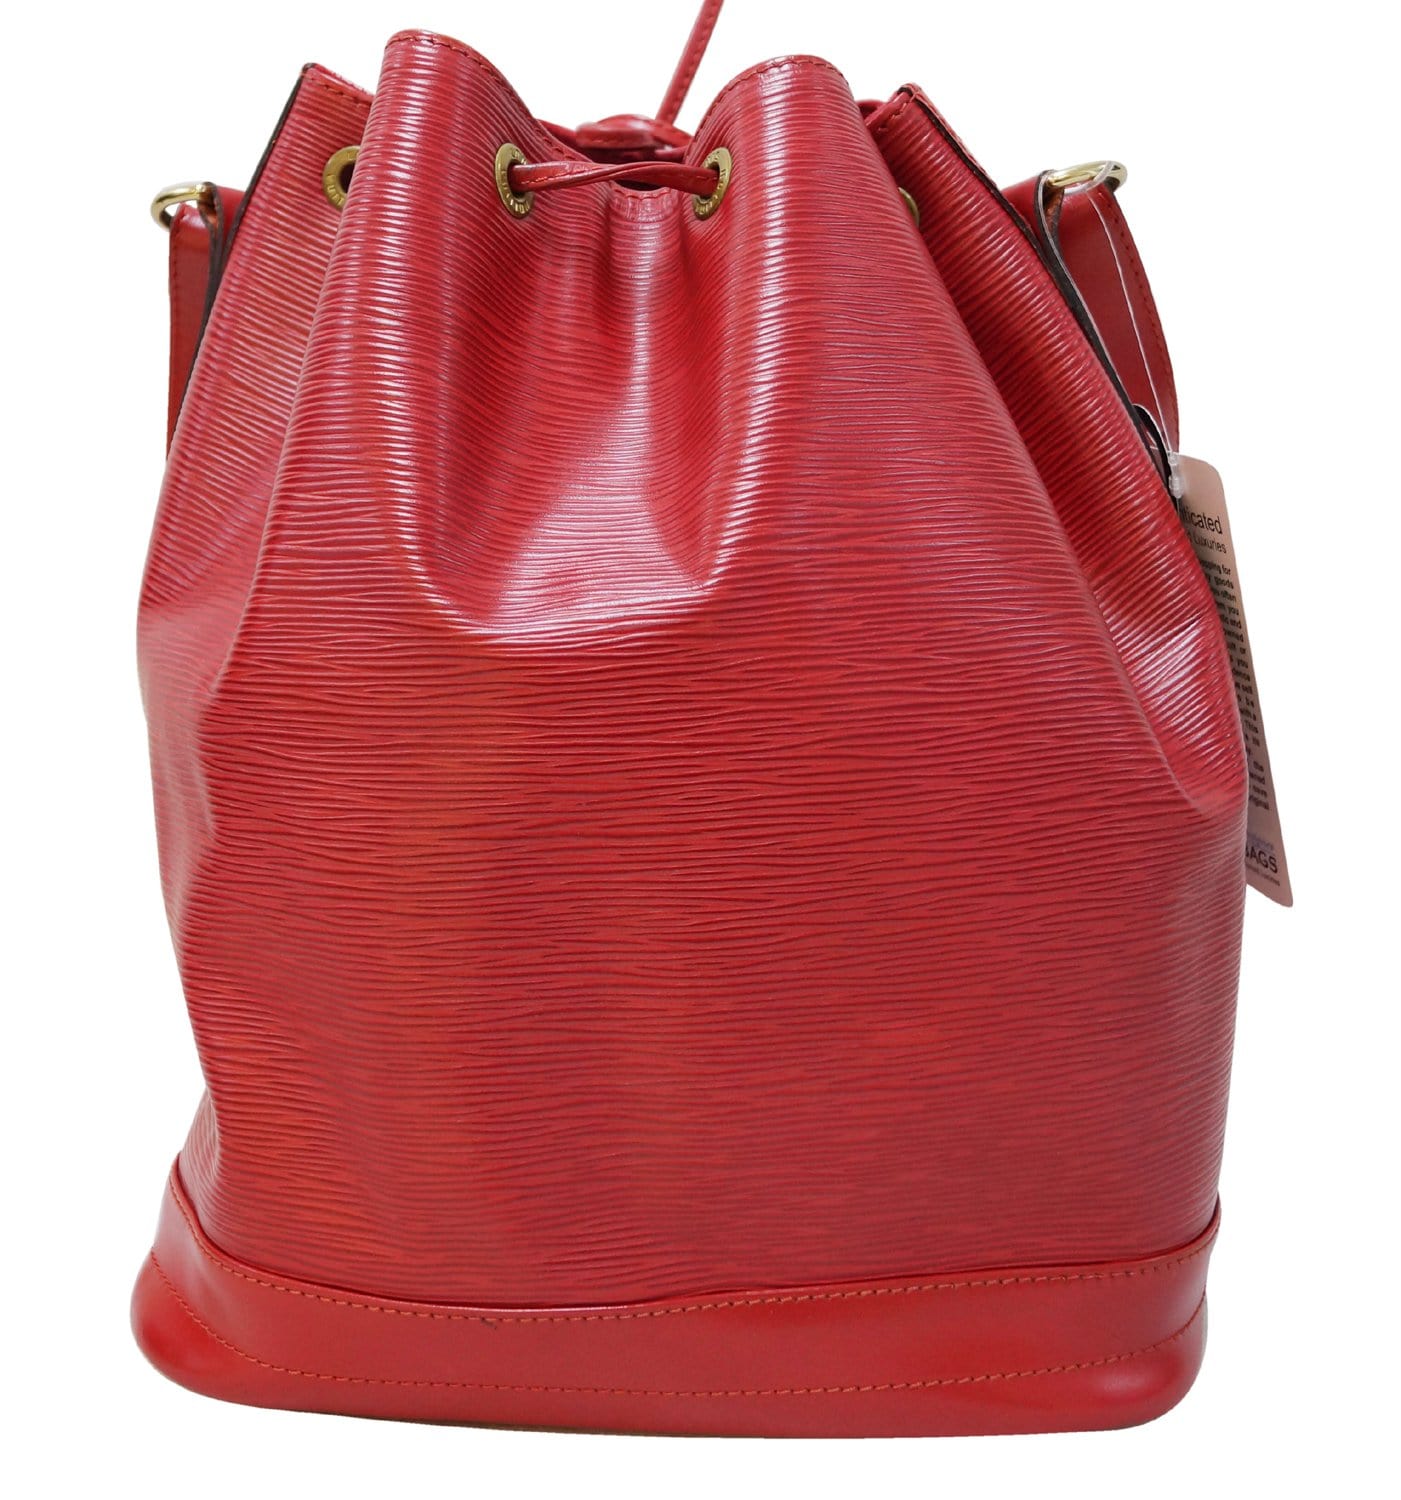 LOUIS VUITTON Louis Vuitton Epi Noe Shoulder Bag Bicolor 2 Tone Noir  Castilian Red M44017